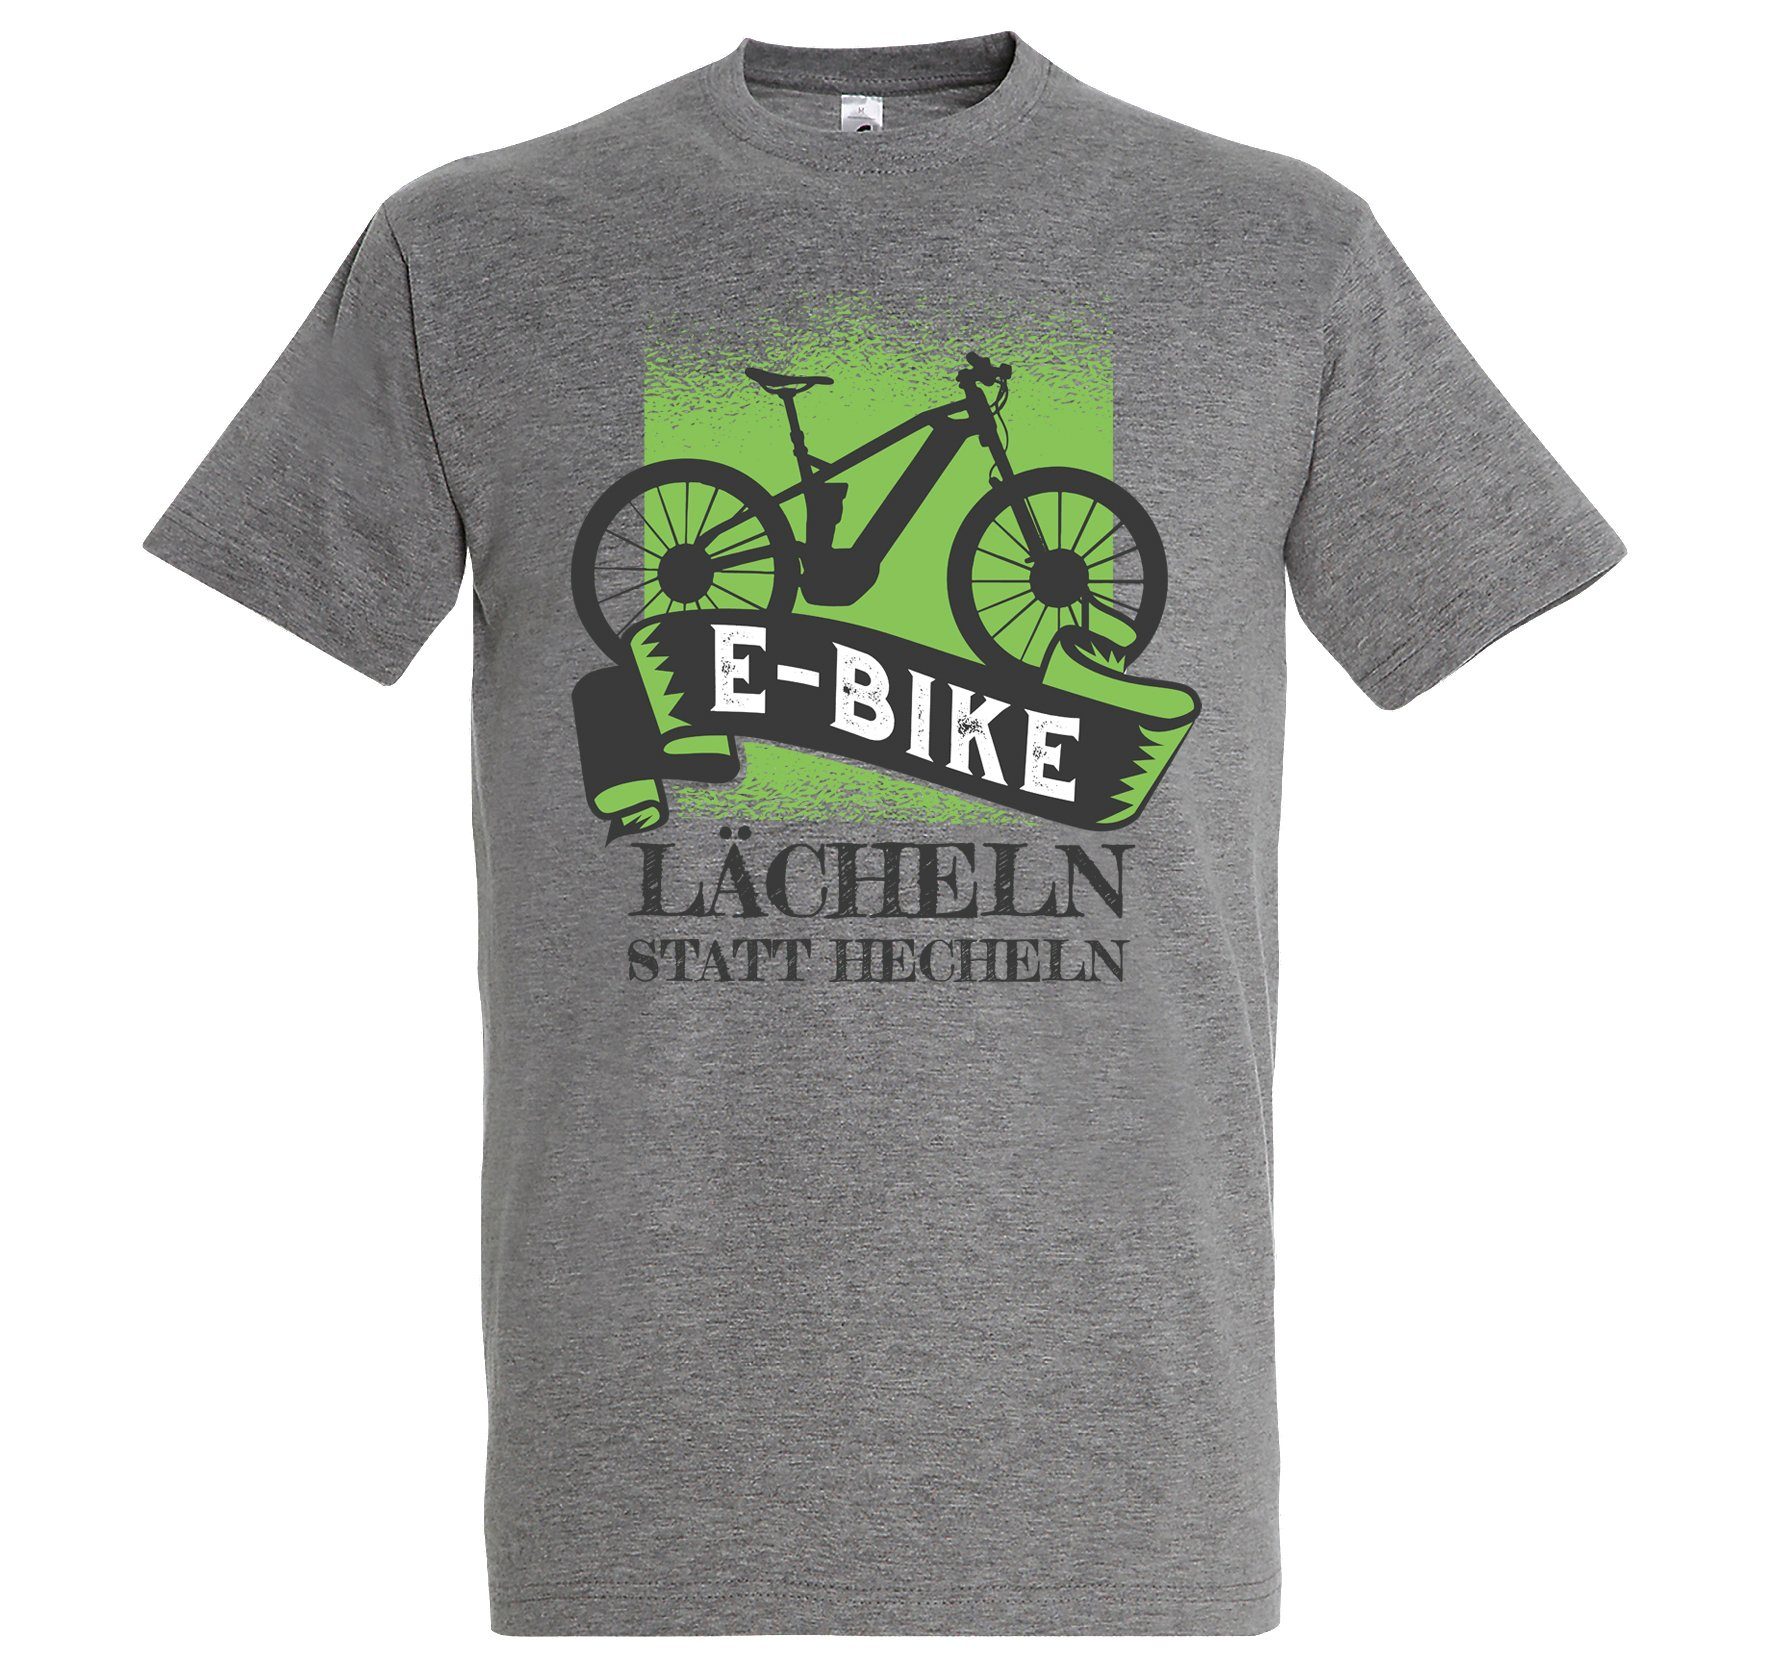 Lächeln Statt Hecheln E-Bike lutsigem Frontprint Designz Shirt mit Grau T-Shirt Youth Herren